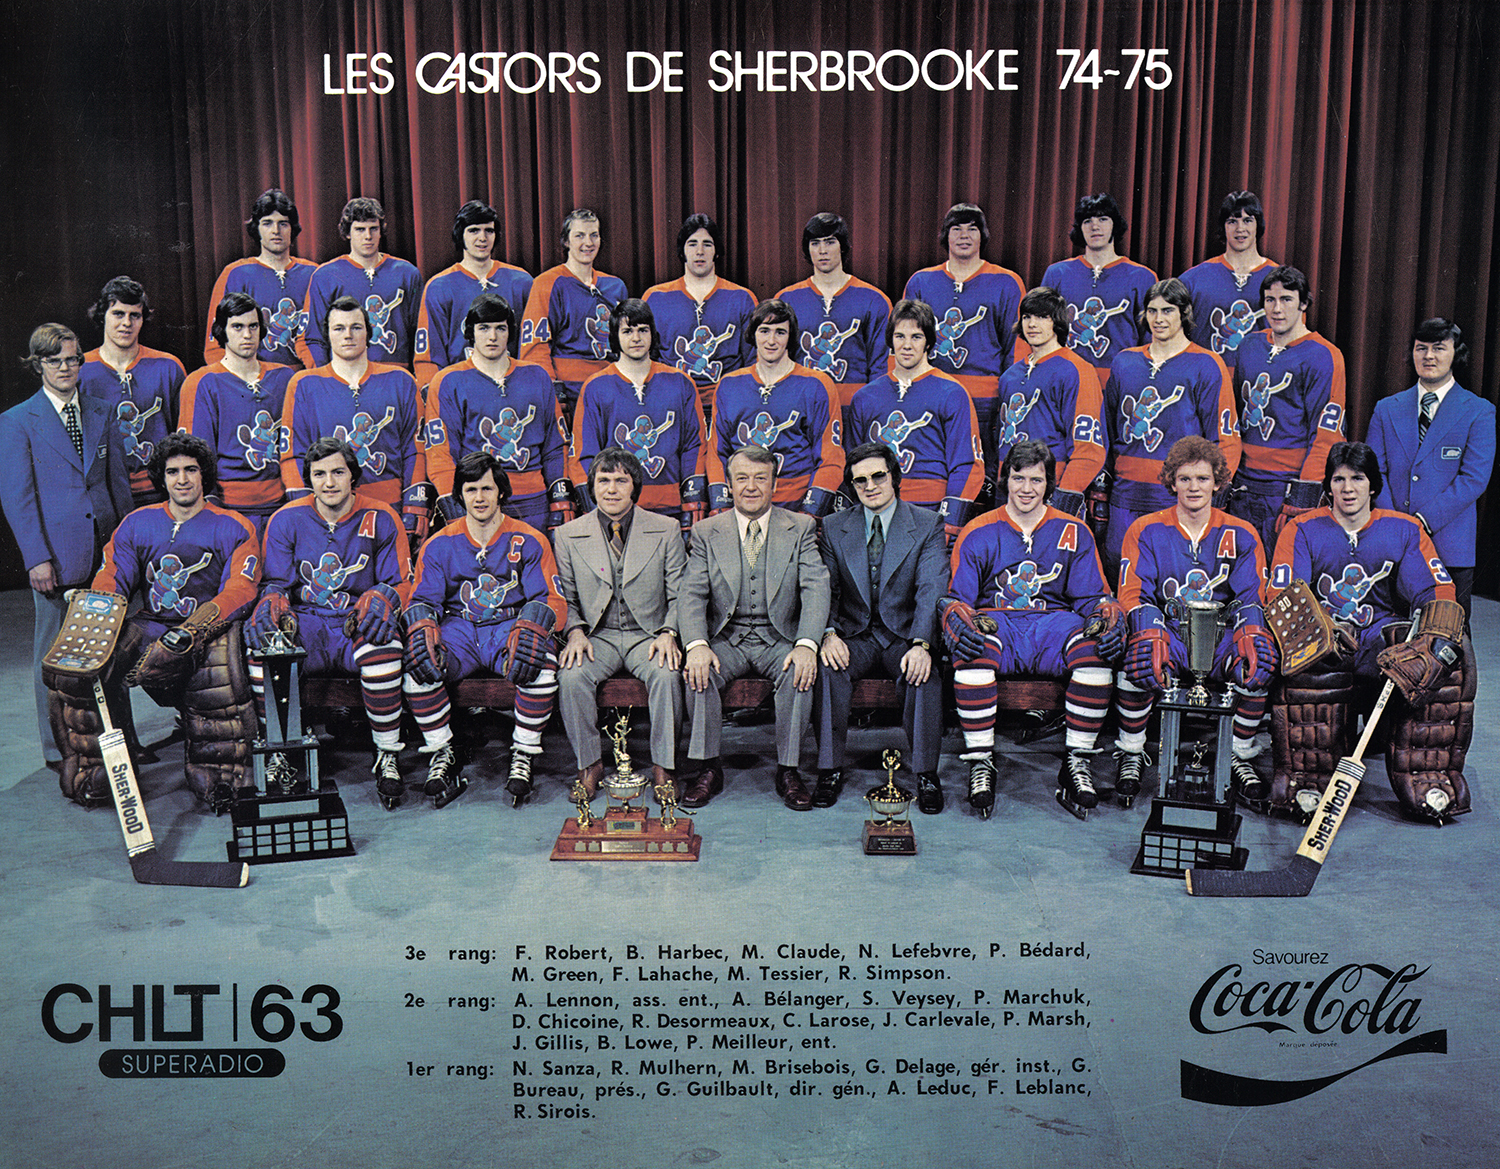 Champions 1974-75, Sherbrooke